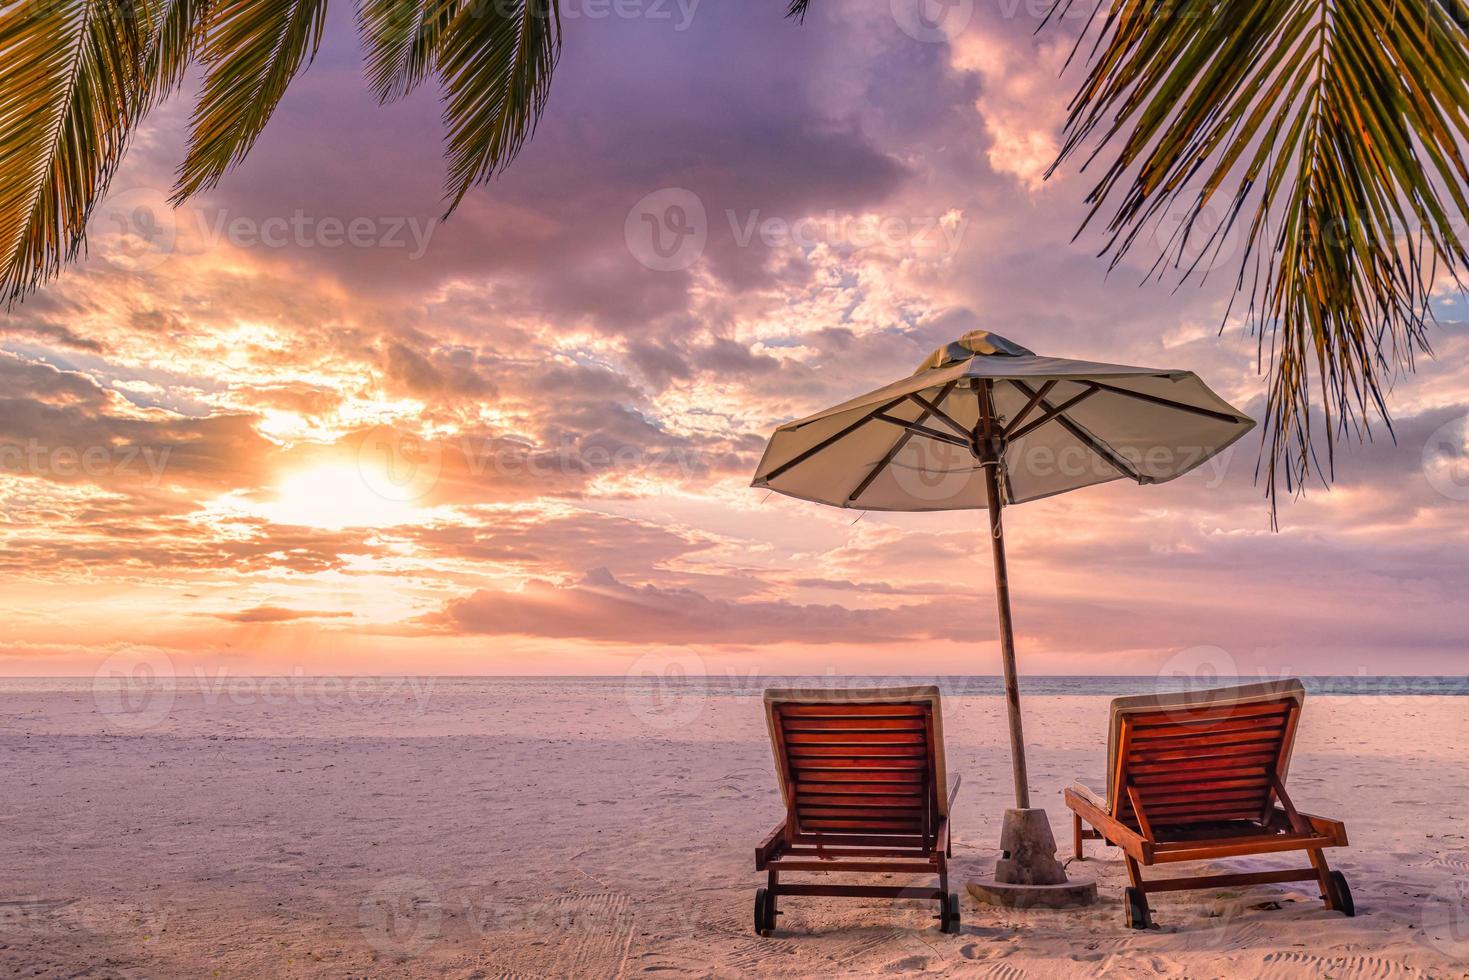 paysage de coucher de soleil tropical parfait, deux chaises longues, des chaises longues, un parasol sous un palmier. sable blanc, vue mer avec horizon, ciel crépusculaire coloré, calme et détente. hôtel balnéaire inspirant photo